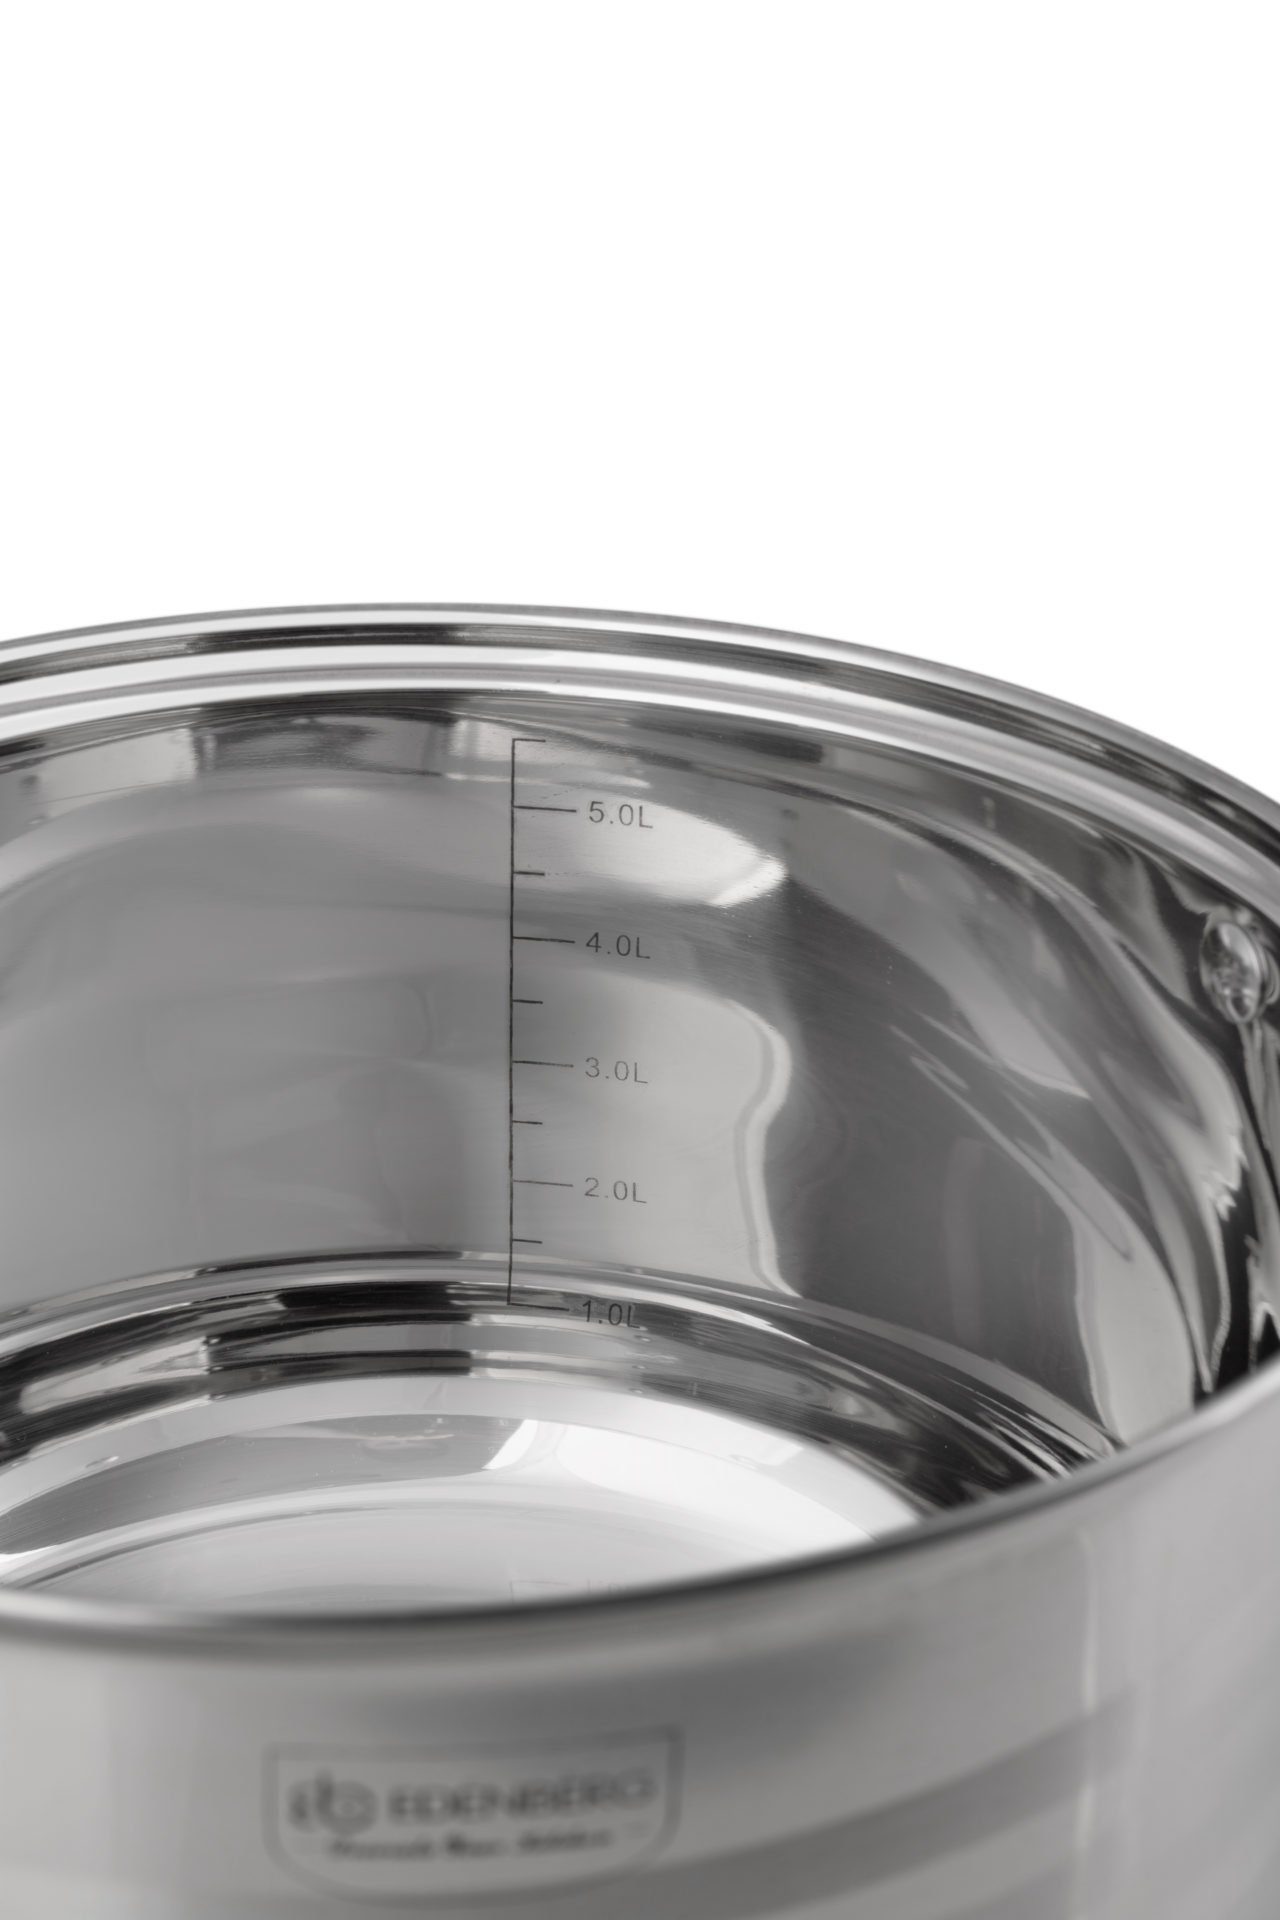 Eine Topf-Set Glas Design Topfset, mit Edelstahl, Kochtöpfe Töpfe Topfsets. ideale Edelstahl, Aluminium, Edenberg Kochtopfset, (Zeitloses des Geschenkidee) Glasdeckel,